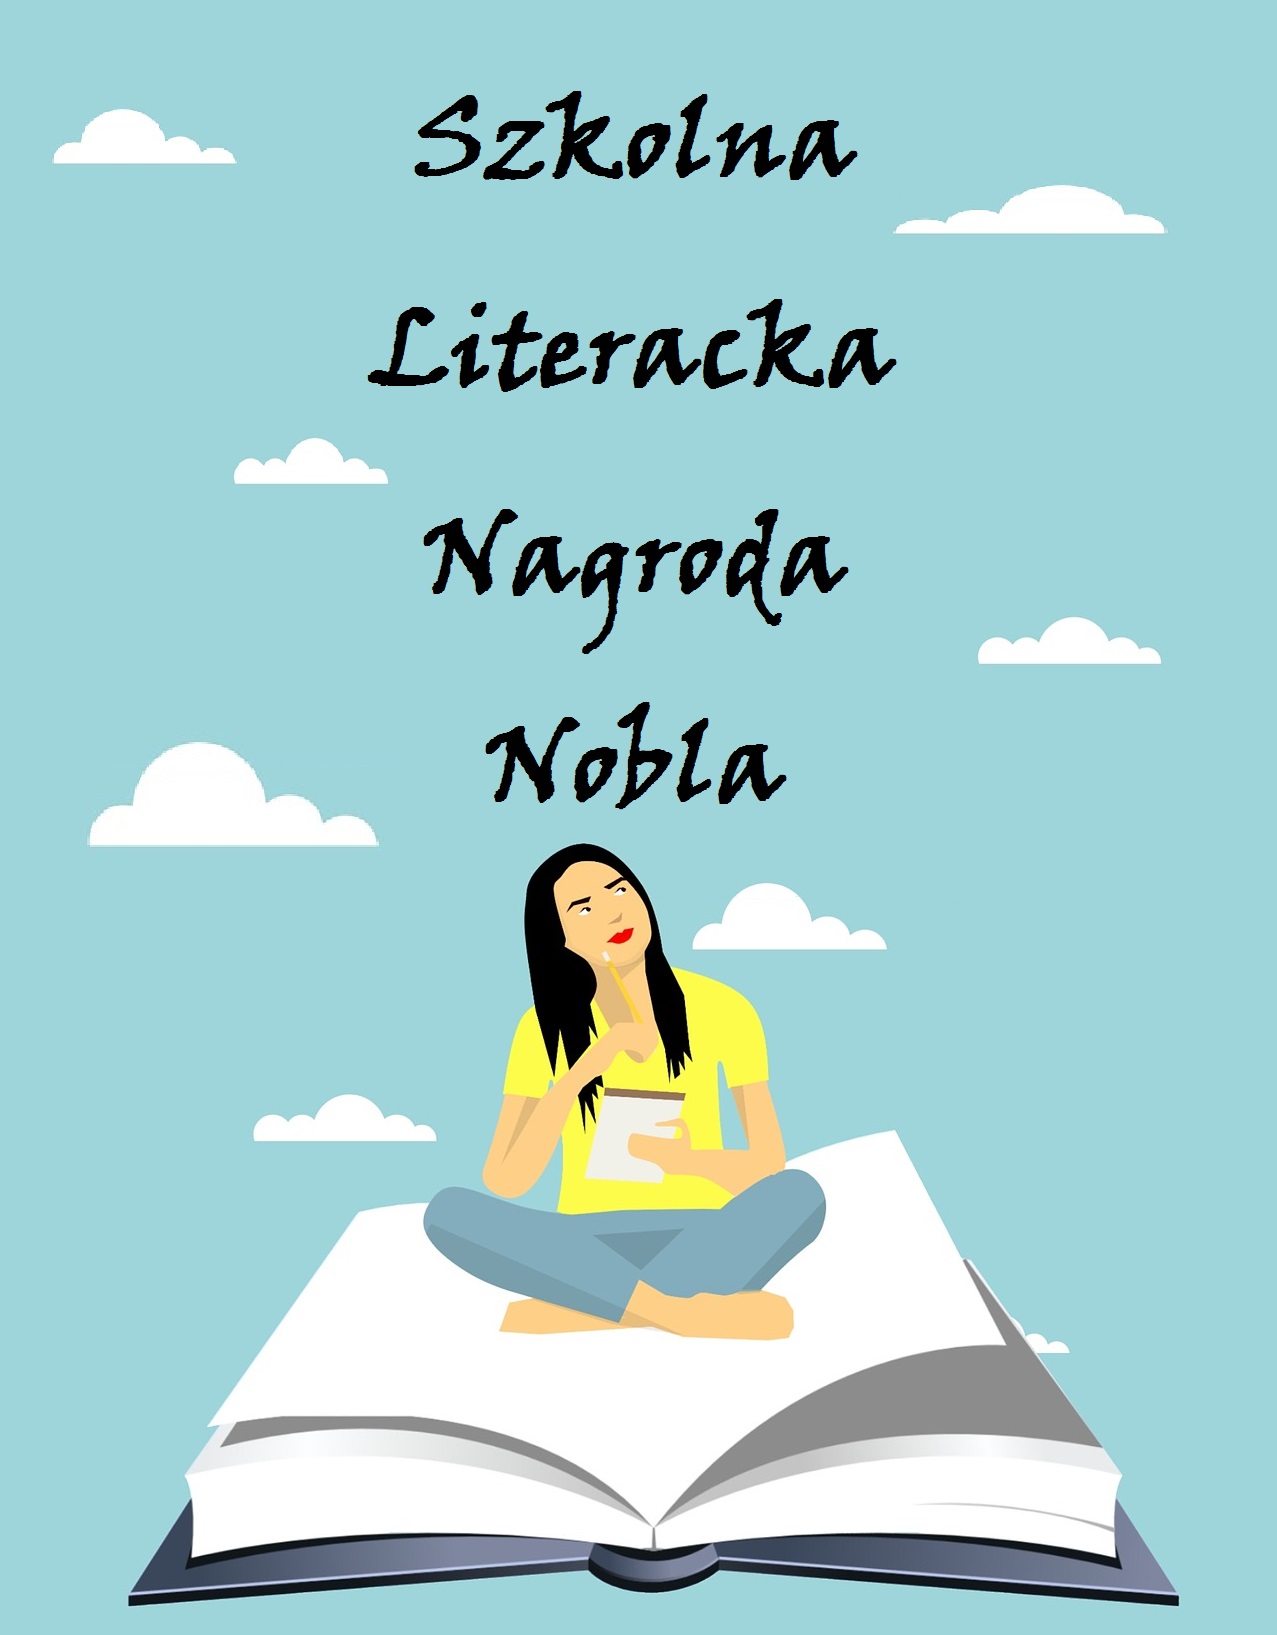 Szkolna literacka nagroda nobla - obrazek przedstawia siedzącą na otwartej książce dziewczynę, która w dłoniach trzyma papier i długopis.